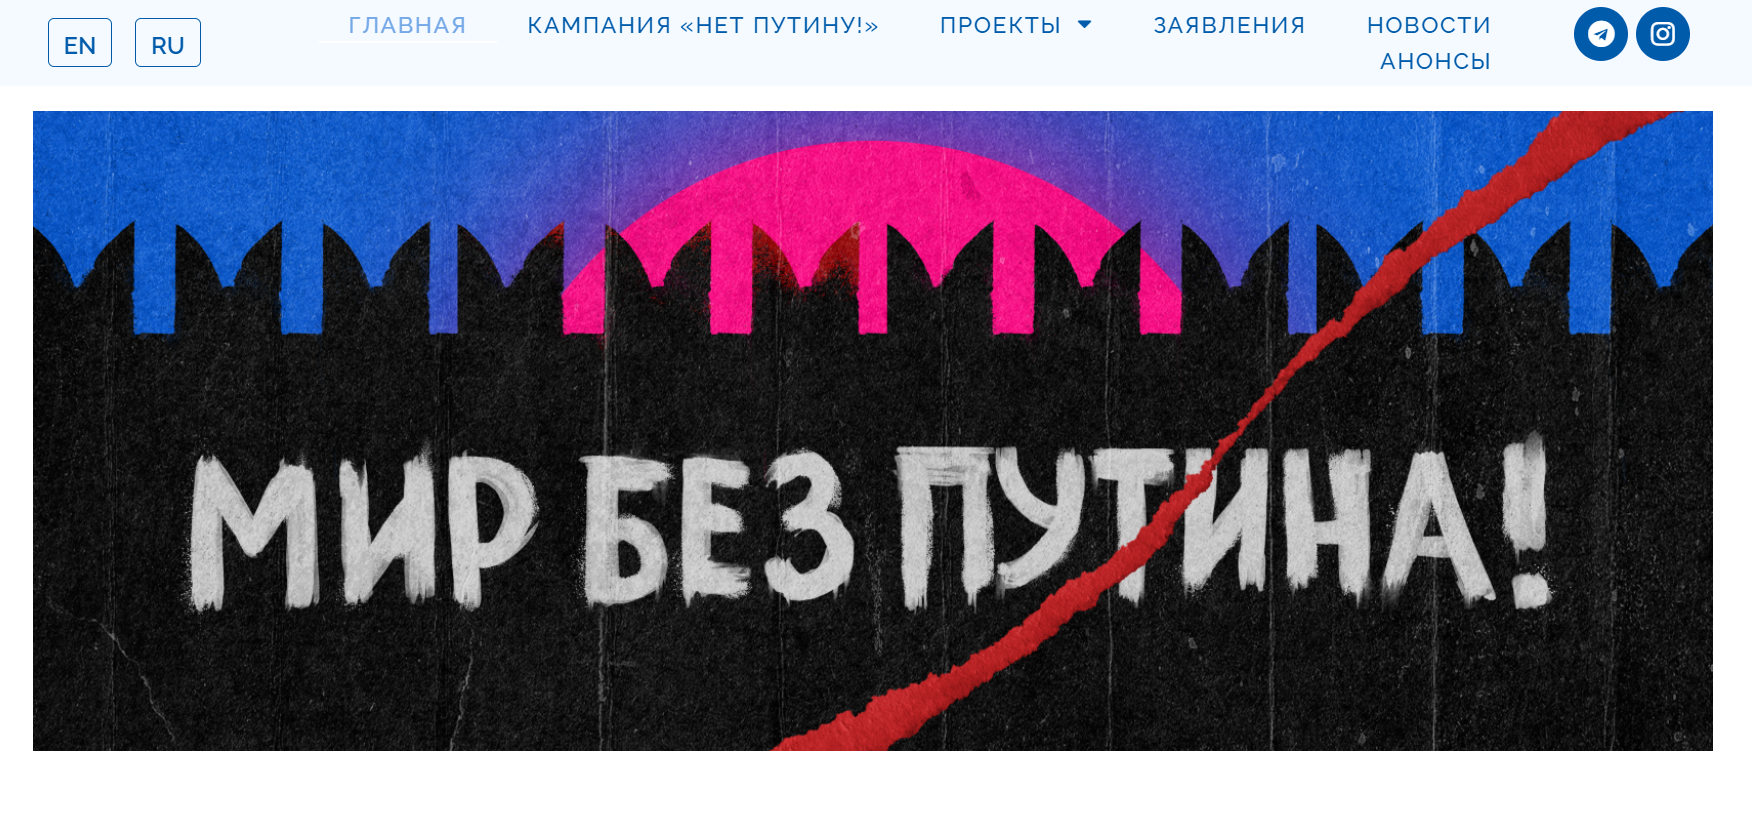 Скриншот с сайта «Антивоенного комитета России».